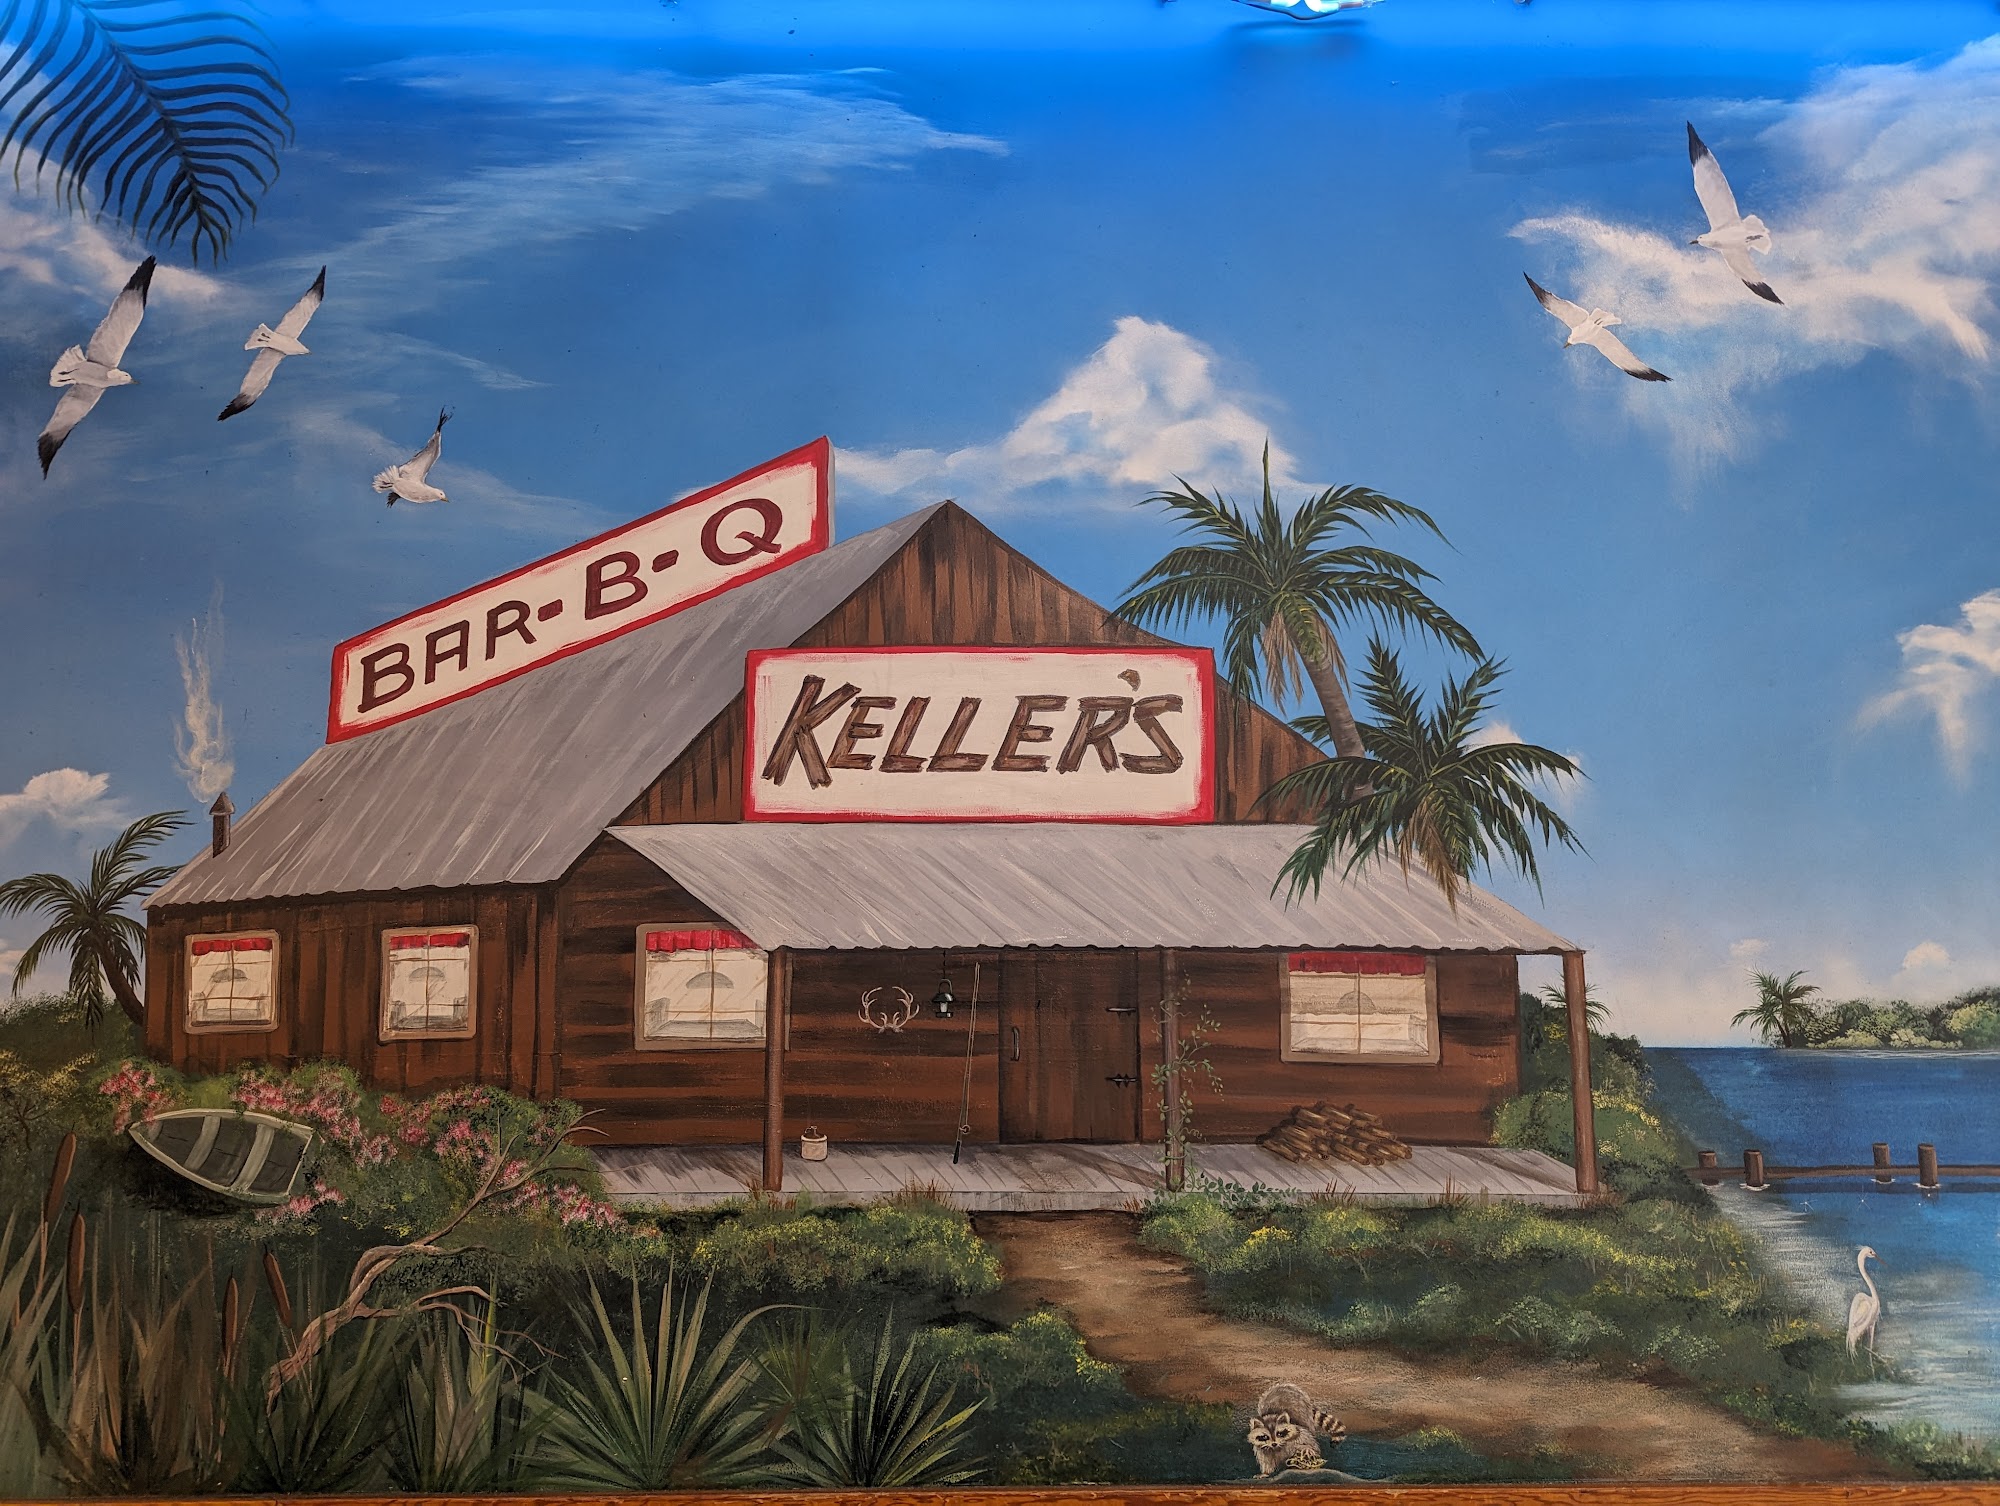 Keller's Bar-B-Q Altamonte Springs